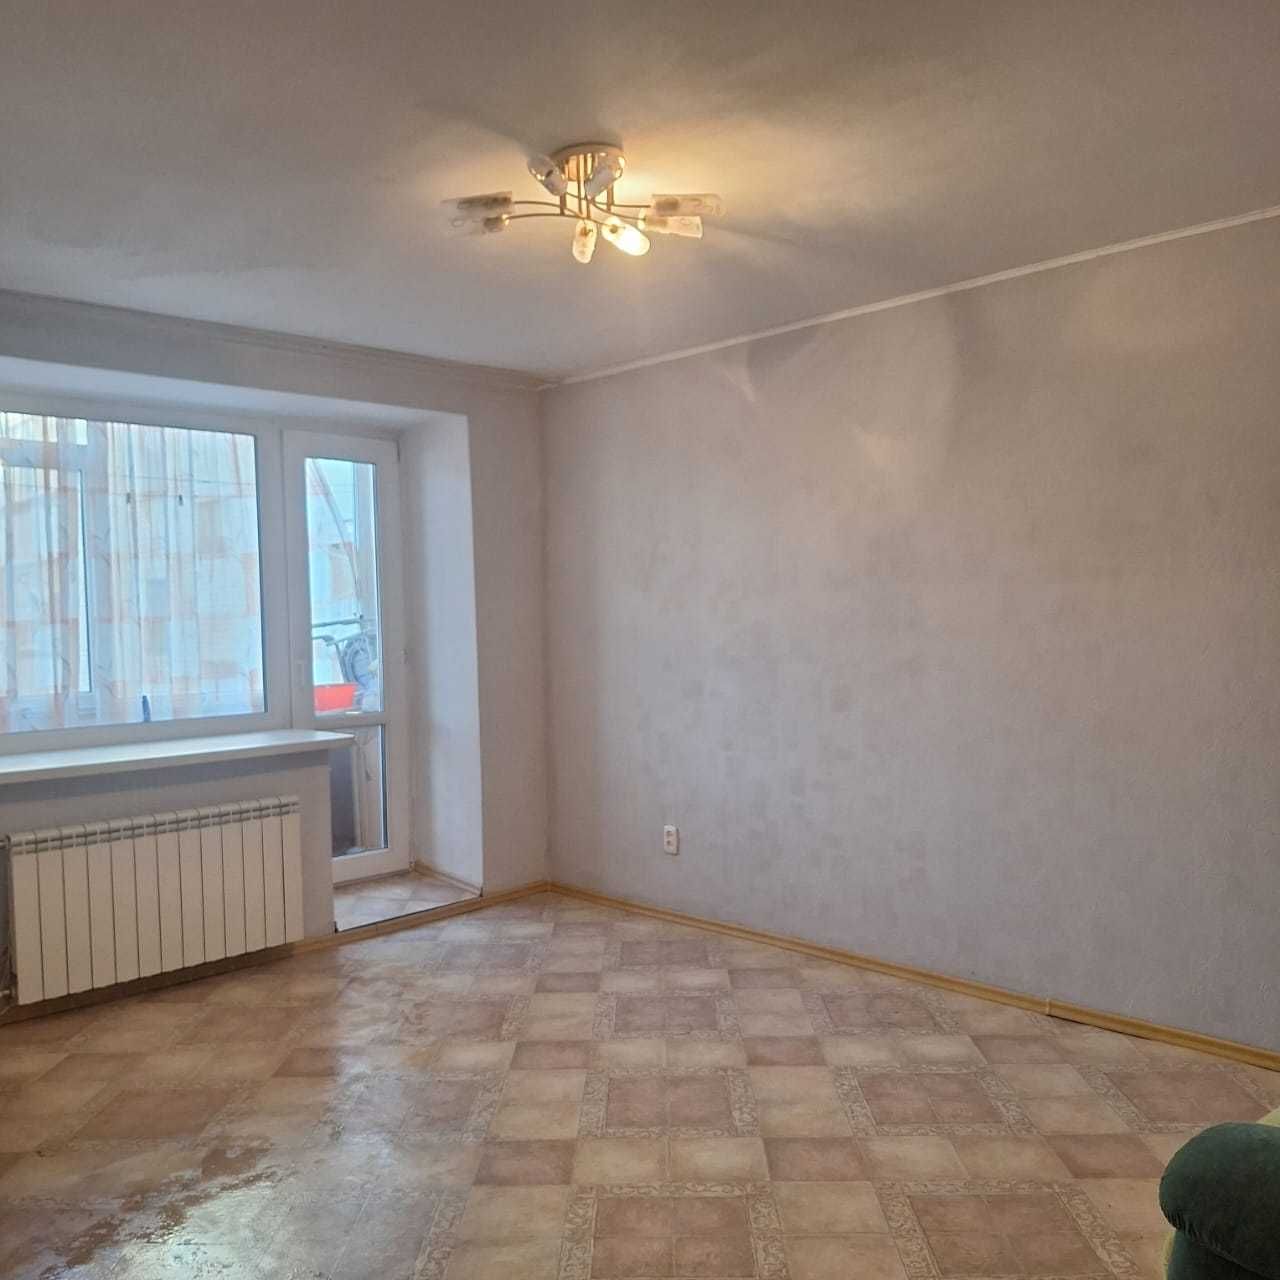 Продам 3-х комнатную квартиру в центре города Баймагамбетова 179